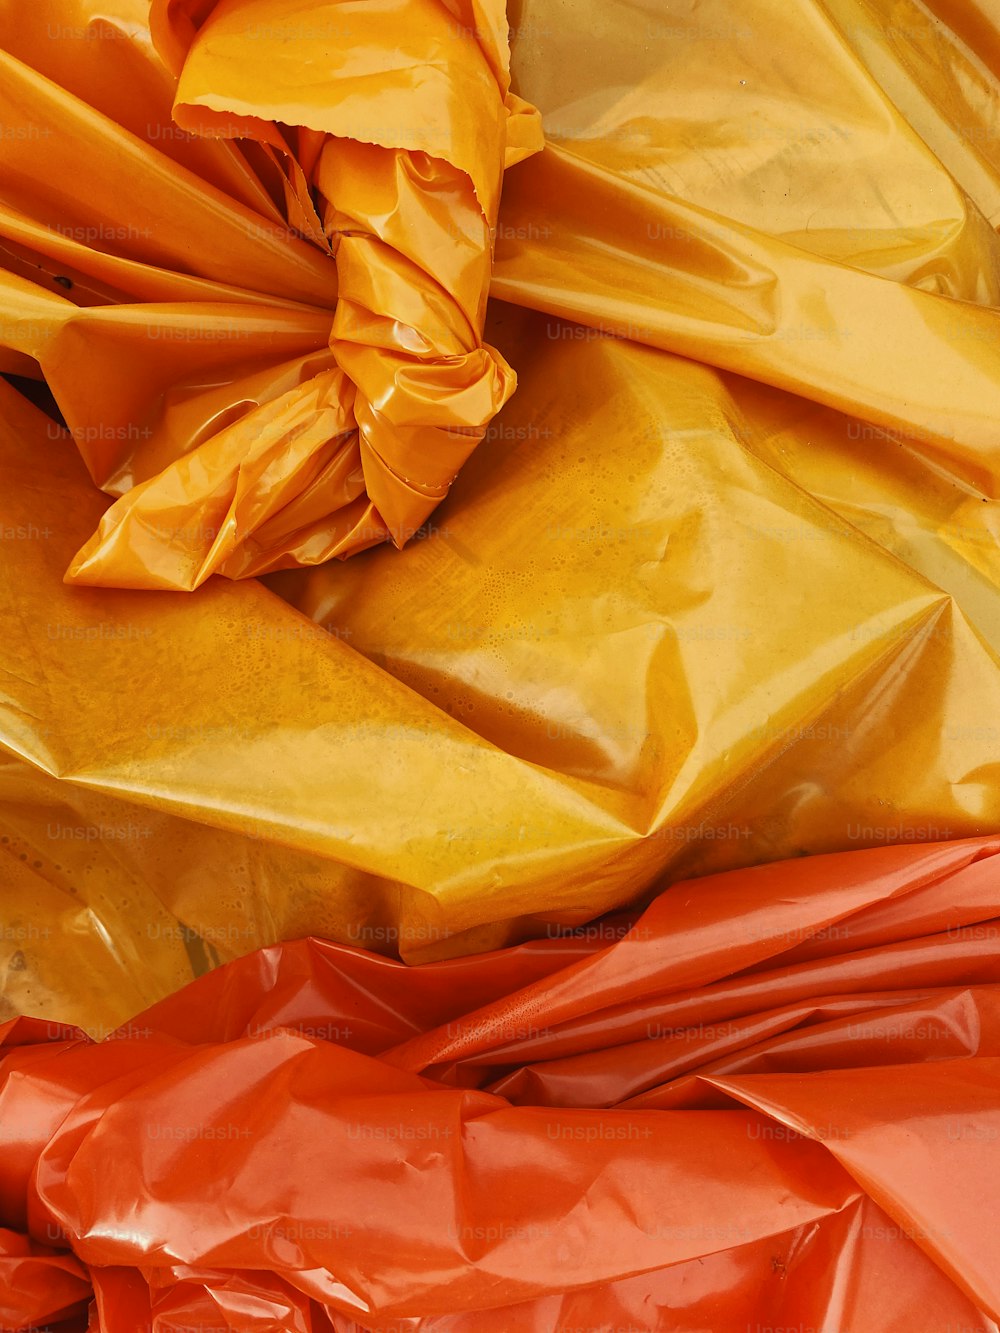 ein Haufen orangefarbener und gelber Plastiktüten